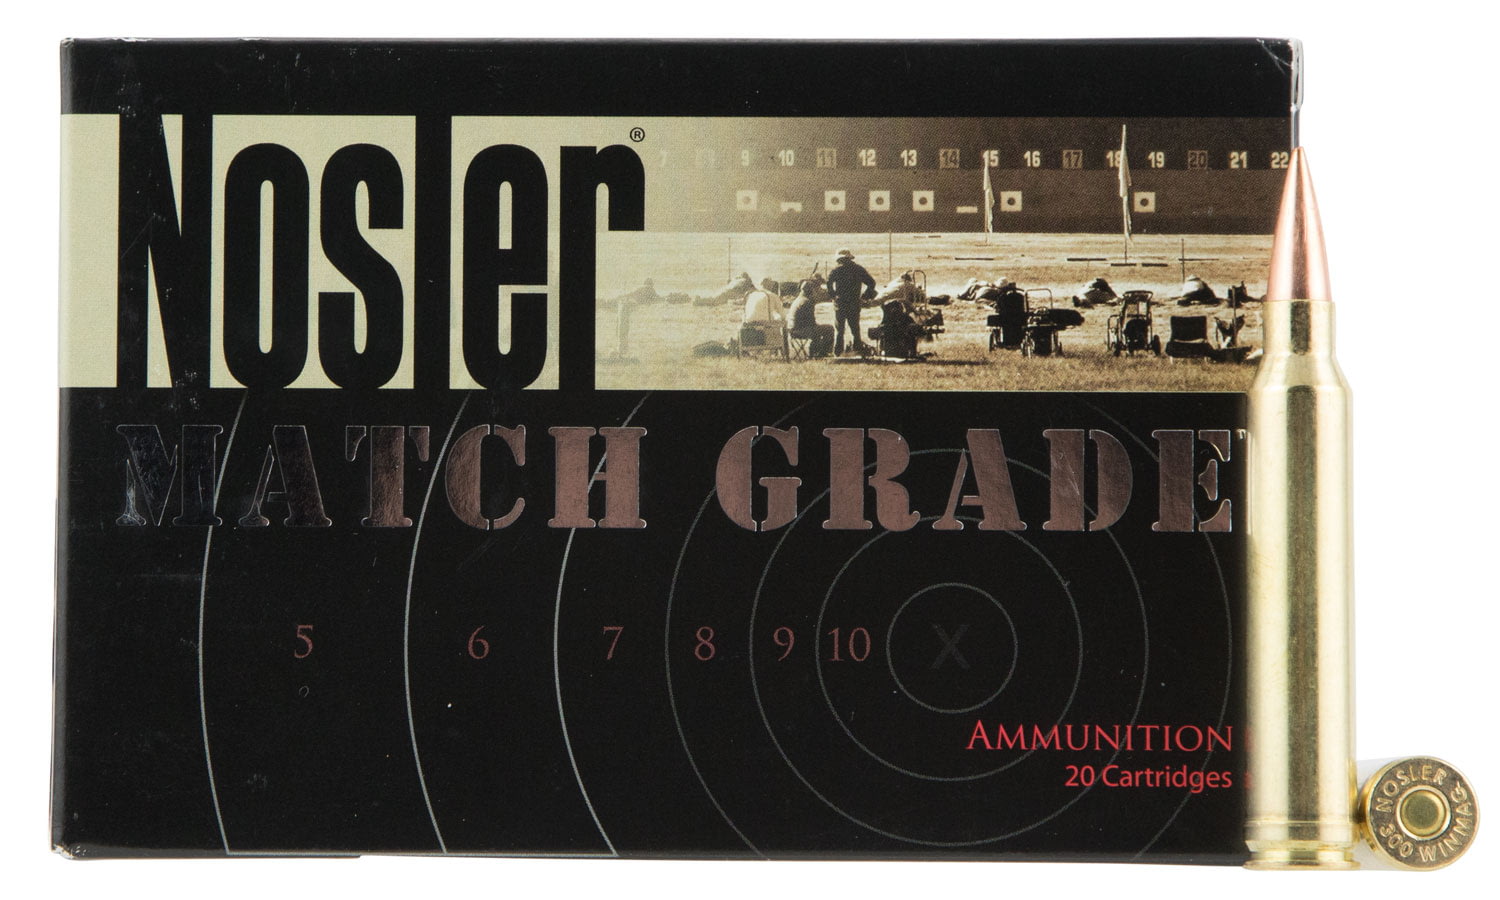 Nosler .300 Winchester Magnum Round Nose Flat 210 grain Brass Cased Rifle Ammunition